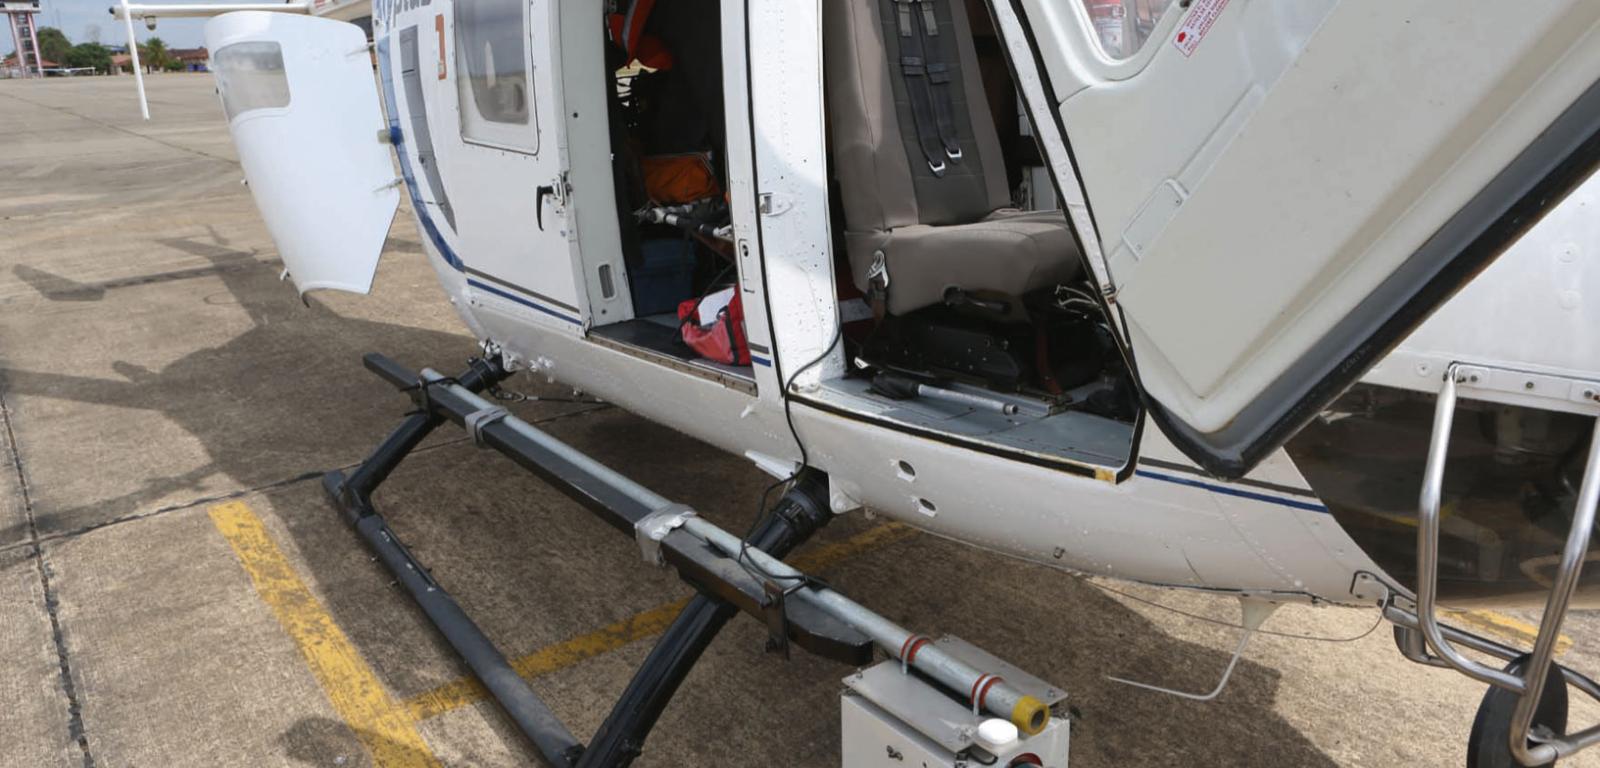 Lidar, czyli skaner laserowy, zamocowany na płozie helikoptera. To on umożliwił badaczom zajrzenie pod powierzchnię gruntu.